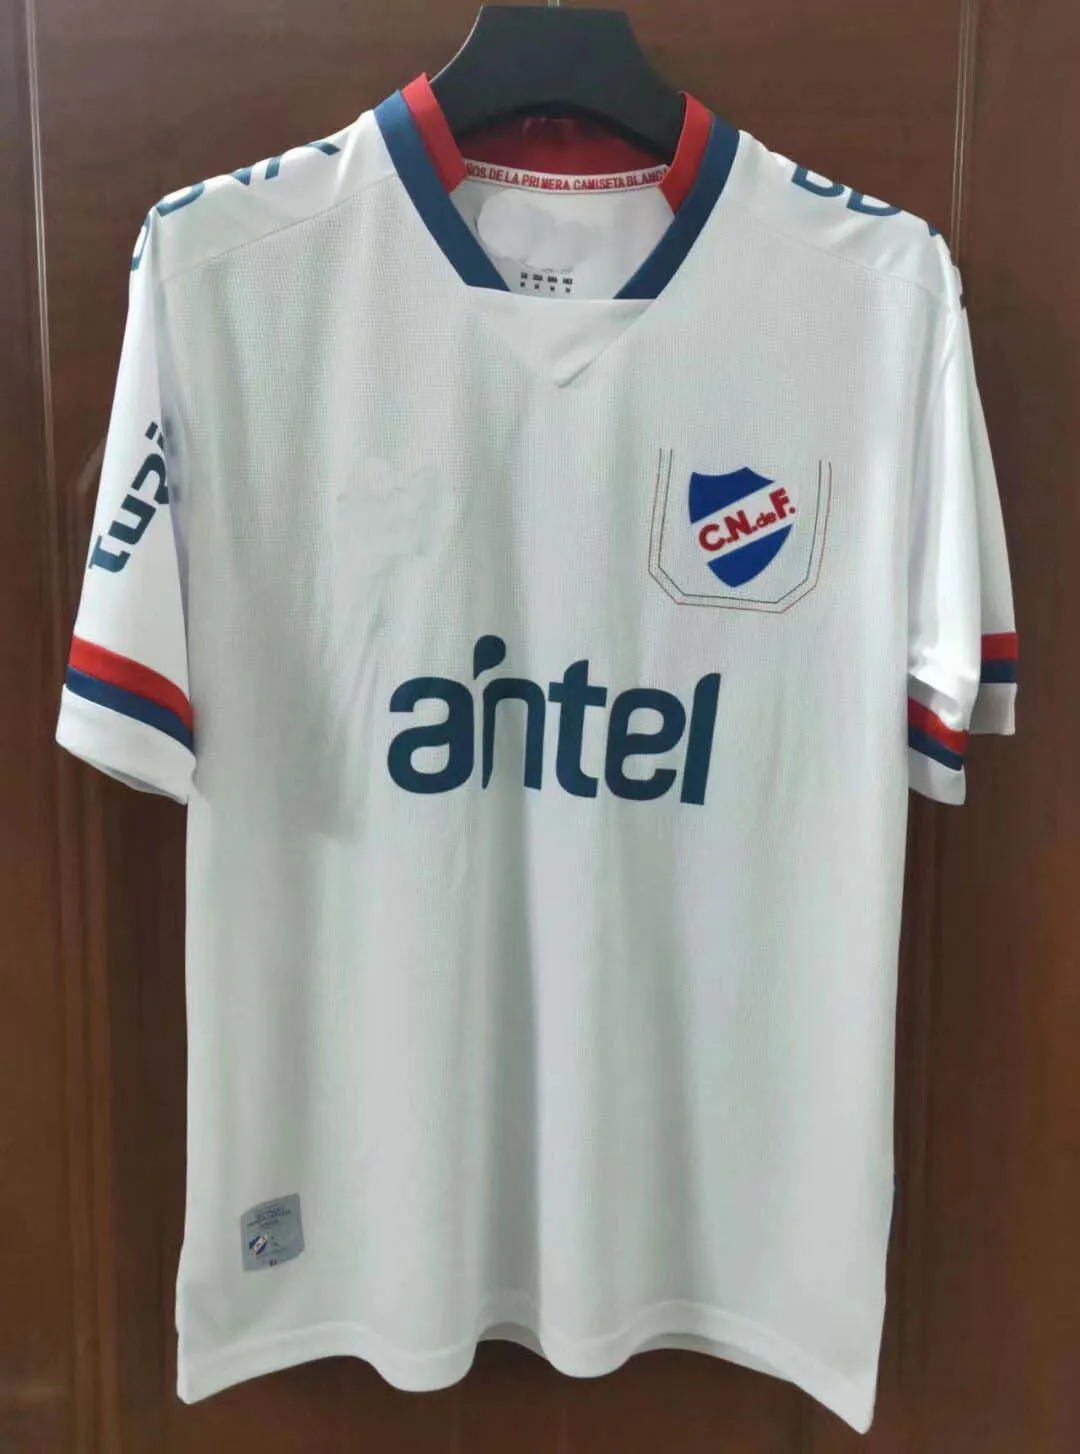 2022 2023 Uruguay Club Nacional Soccer Jerseys Suarez GIGLIOTTI J.I.RAMIREZ  F. FAGUNDEZ B.OCAMPO Home Away 22 23 Shirt Football Kit From Xx233792844,  $14.02